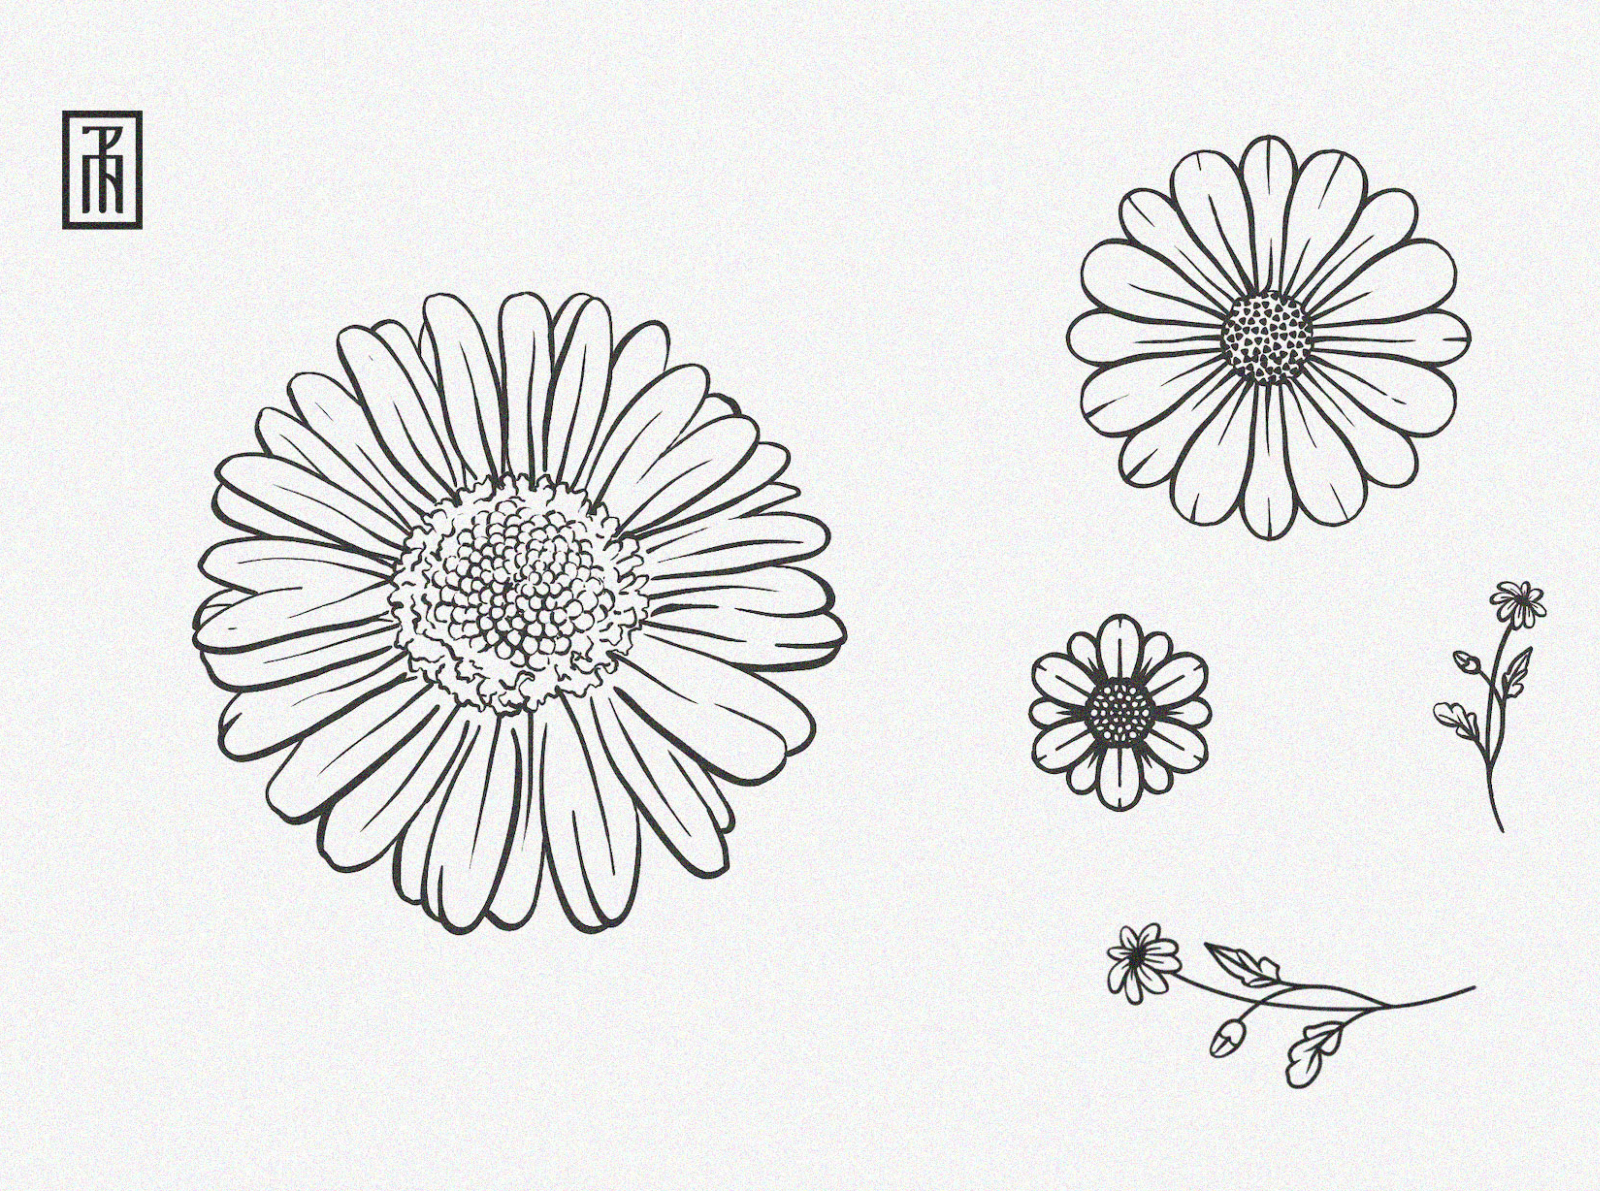 33 Fabulous Daisy Tattoo Ideas and Designs (2022) | Daisy tattoo designs,  Sunflower tattoo simple, Daisy tattoo